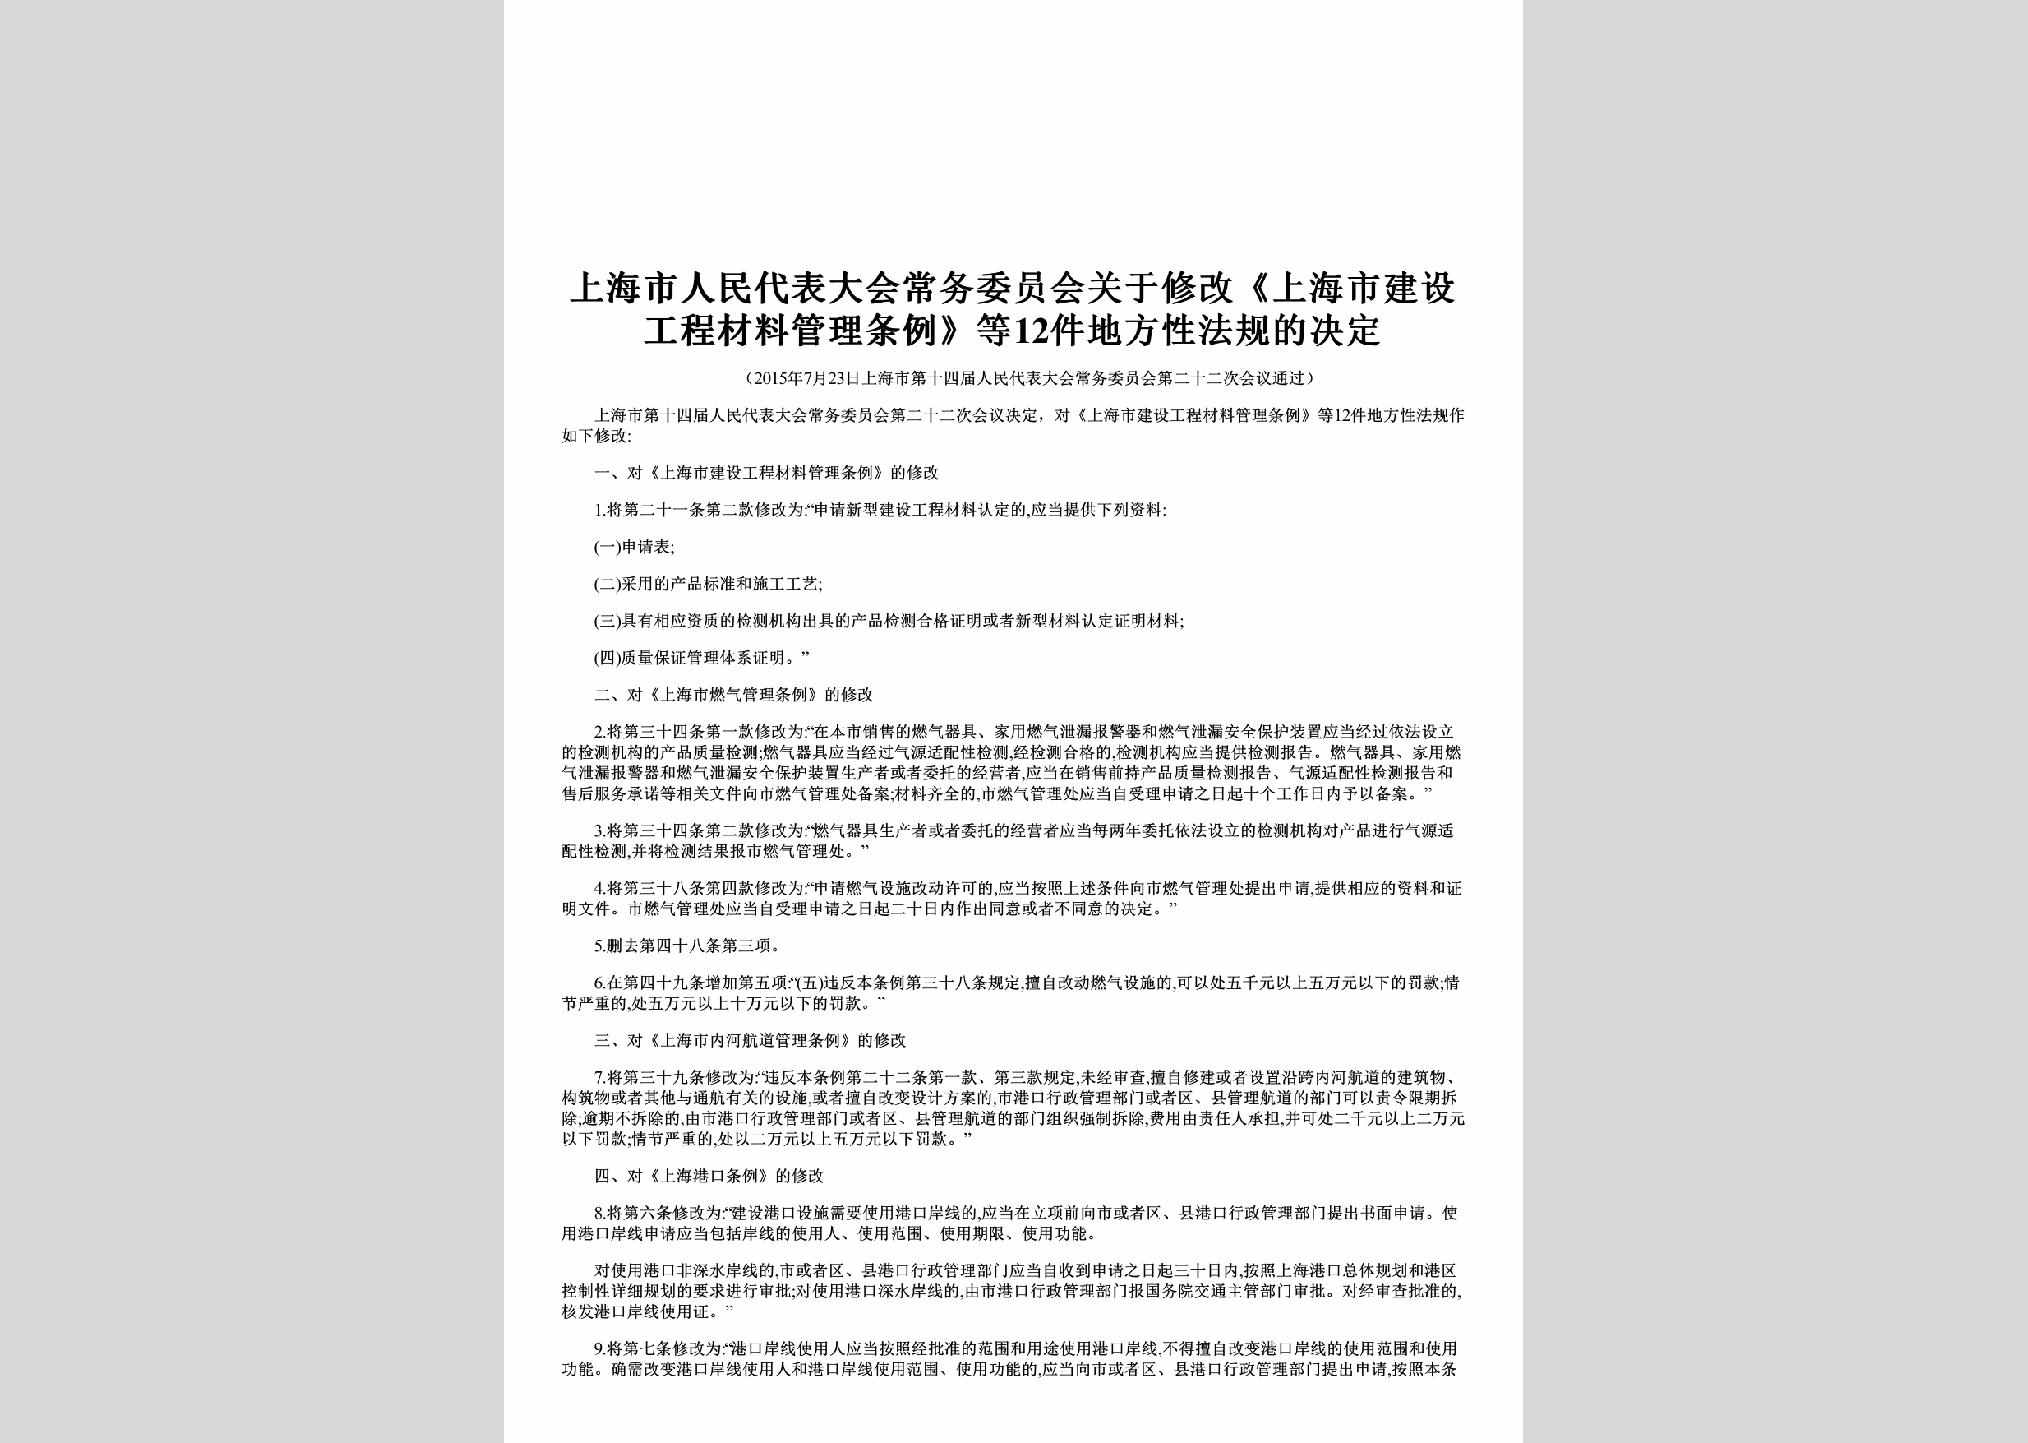 上海市人民代表大会常务委员会公告第二十七号：关于修改《上海市建设工程材料管理条例》等12件地方性法规的决定